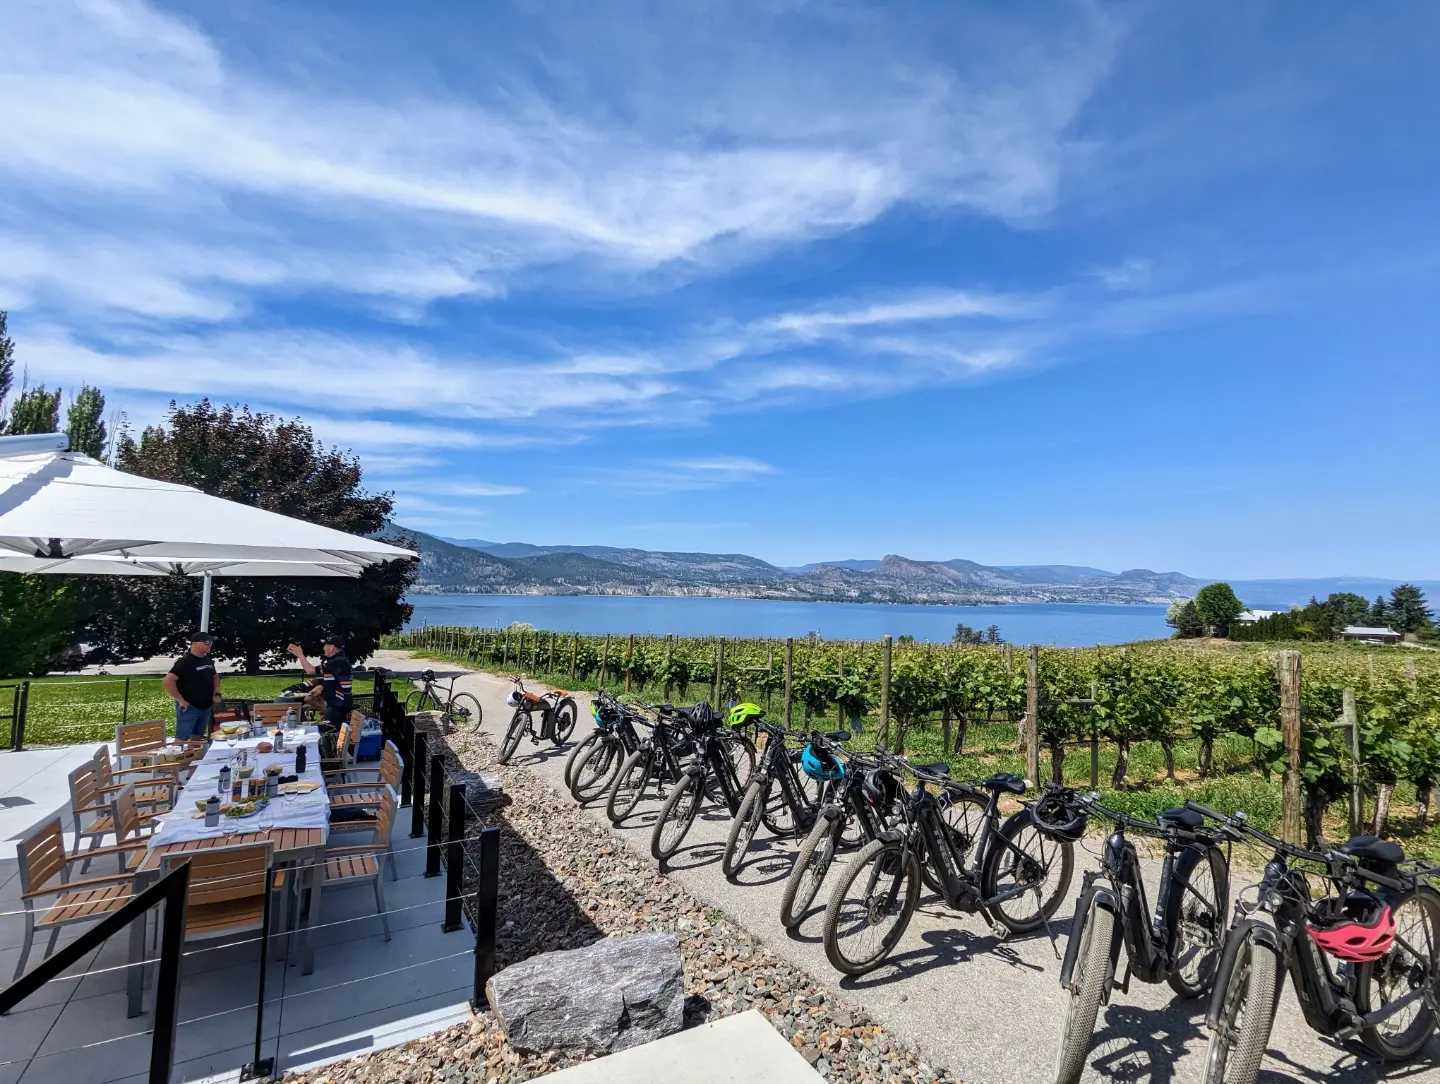 bikes lined along an vineyard